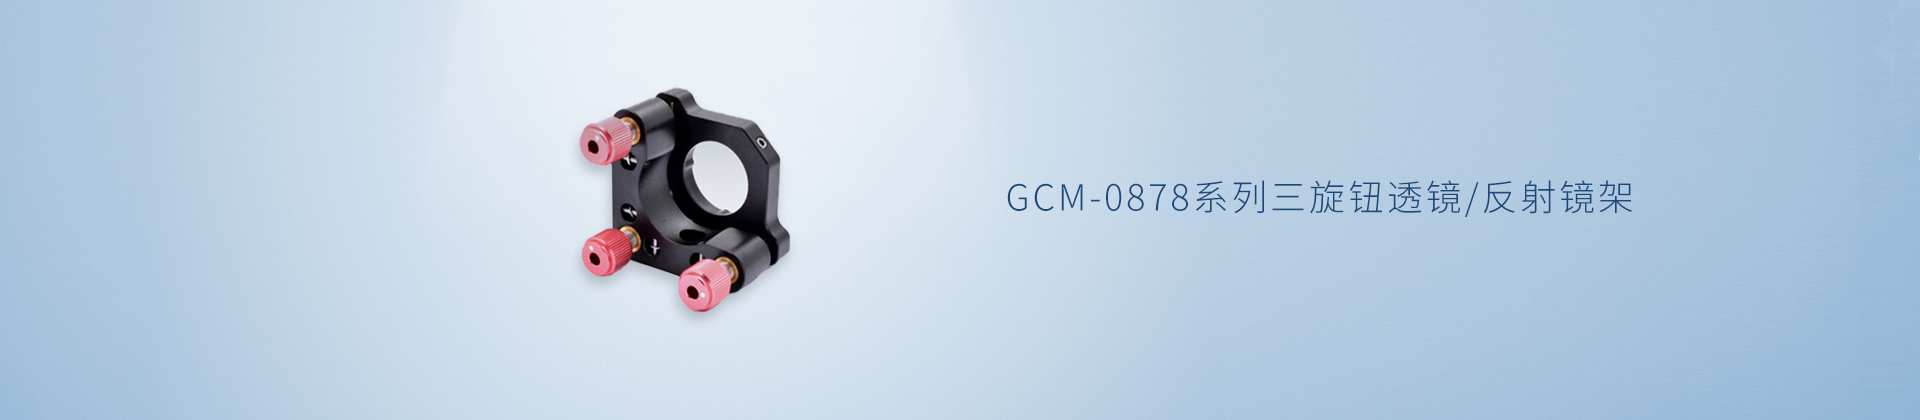 GCM-0878系列三旋钮透镜/反射镜架